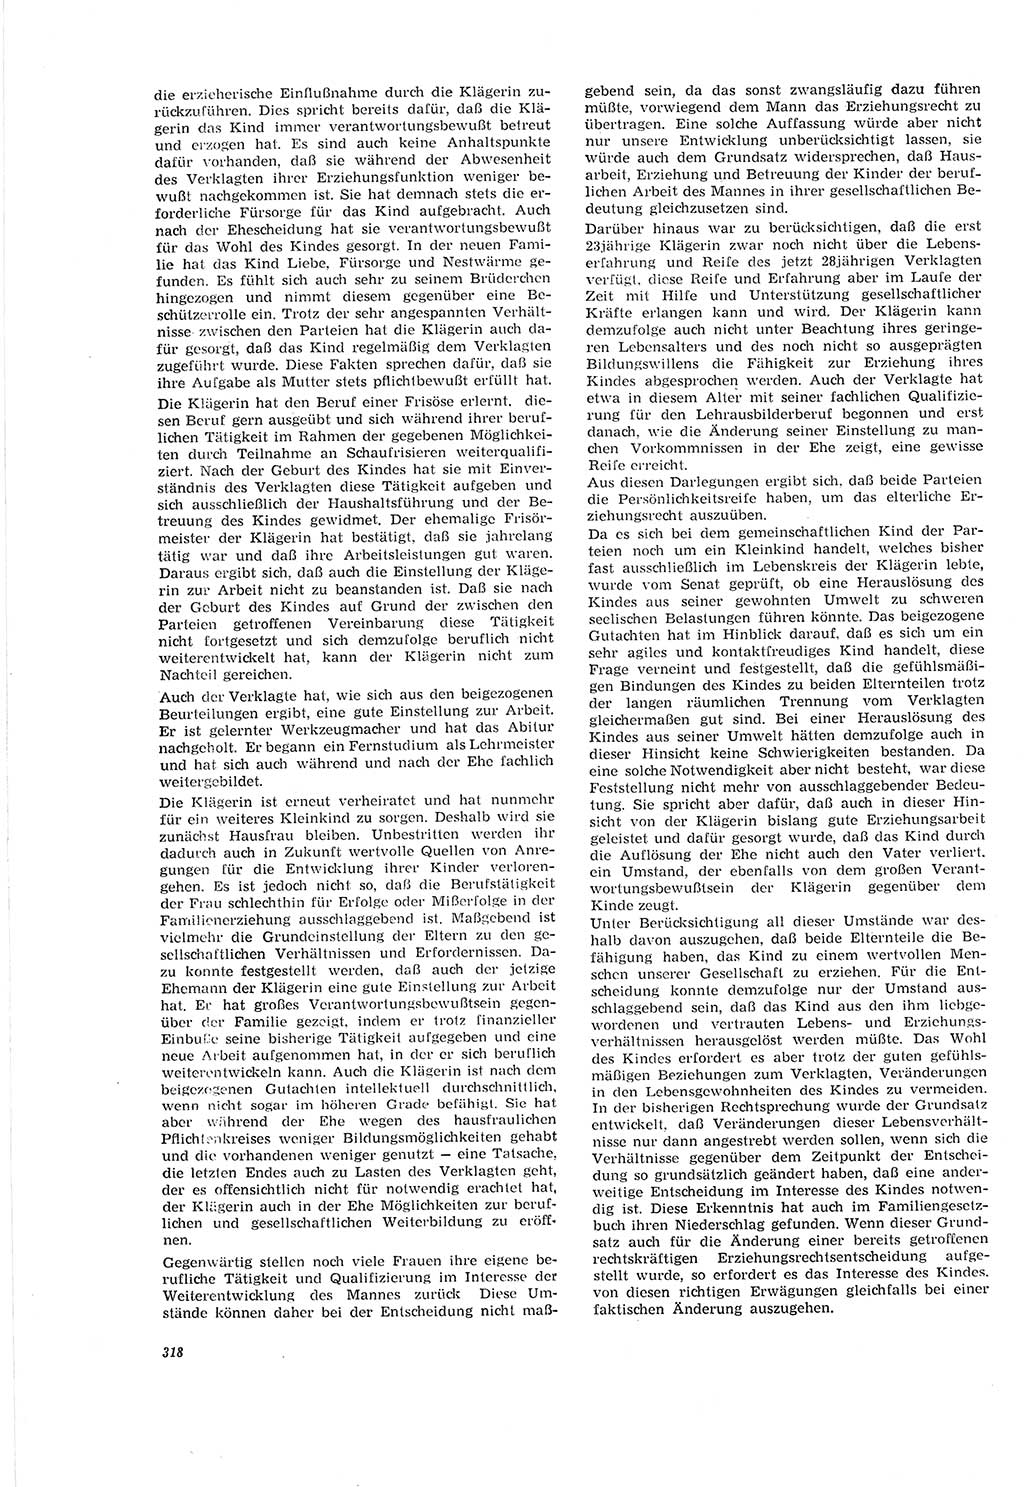 Neue Justiz (NJ), Zeitschrift für Recht und Rechtswissenschaft [Deutsche Demokratische Republik (DDR)], 20. Jahrgang 1966, Seite 318 (NJ DDR 1966, S. 318)